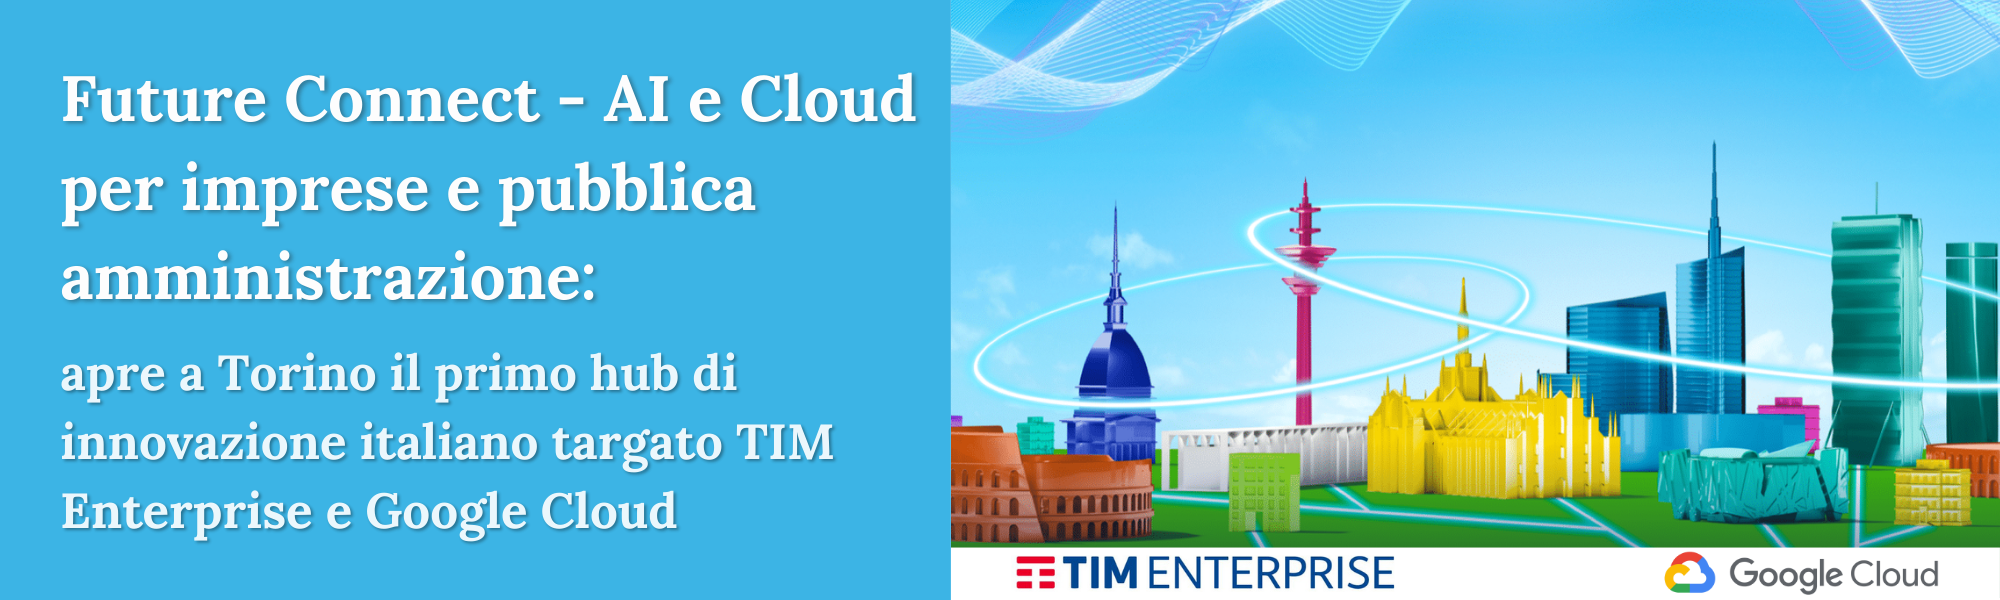 Featured image for “Future Connect – AI e Cloud per imprese e pubblica amministrazione: apre a Torino il primo hub di innovazione italiano targato TIM Enterprise e Google Cloud”